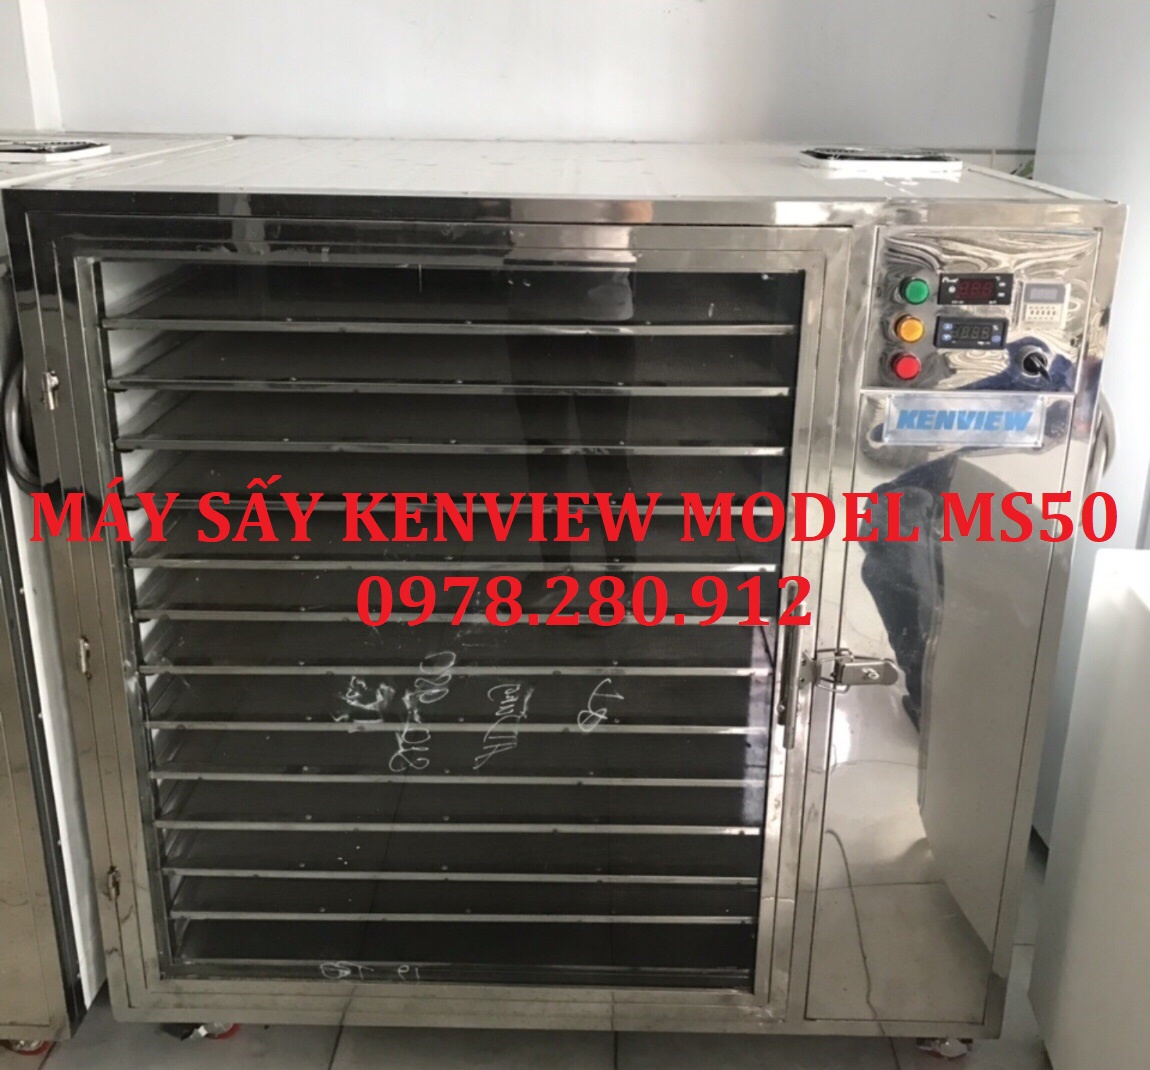 Kenview cung cấp máy sấy tôm khô tại Bạc Liêu. 0978.280.912